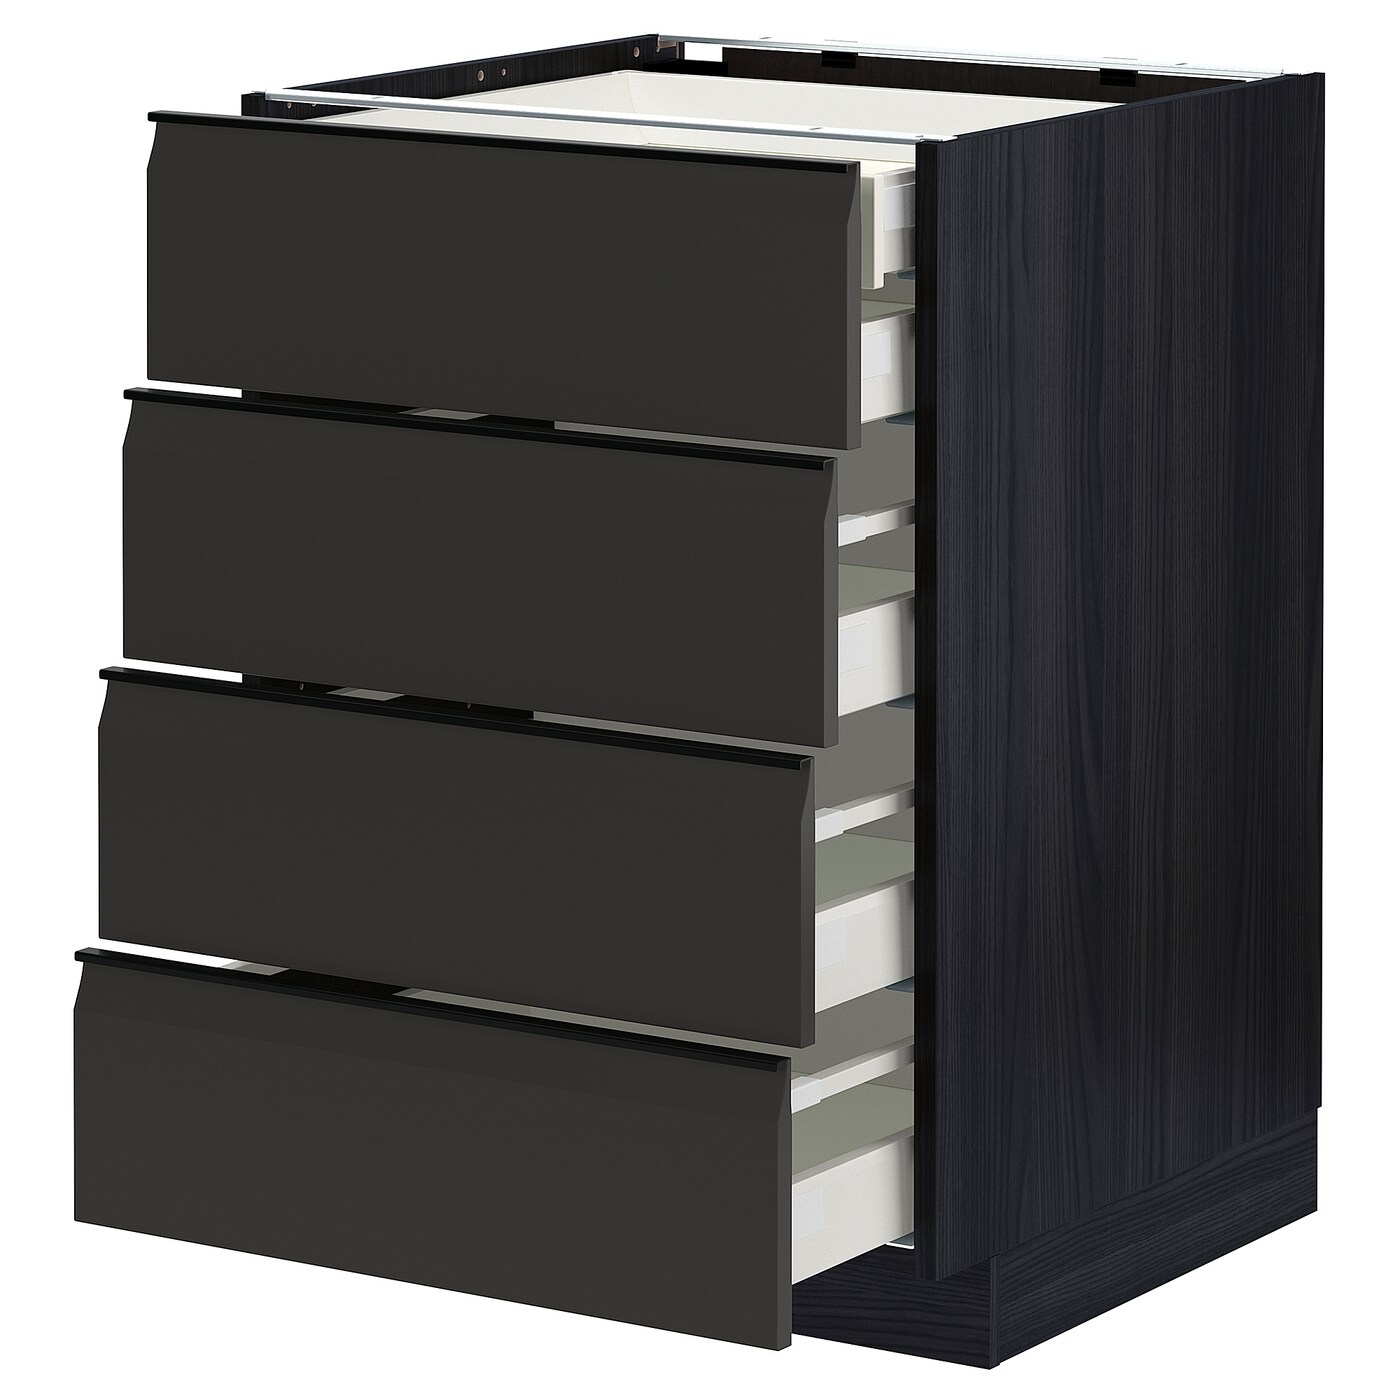 Напольный шкаф  - IKEA METOD MAXIMERA, 88x61,6x60см, черный, МЕТОД МАКСИМЕРА ИКЕА